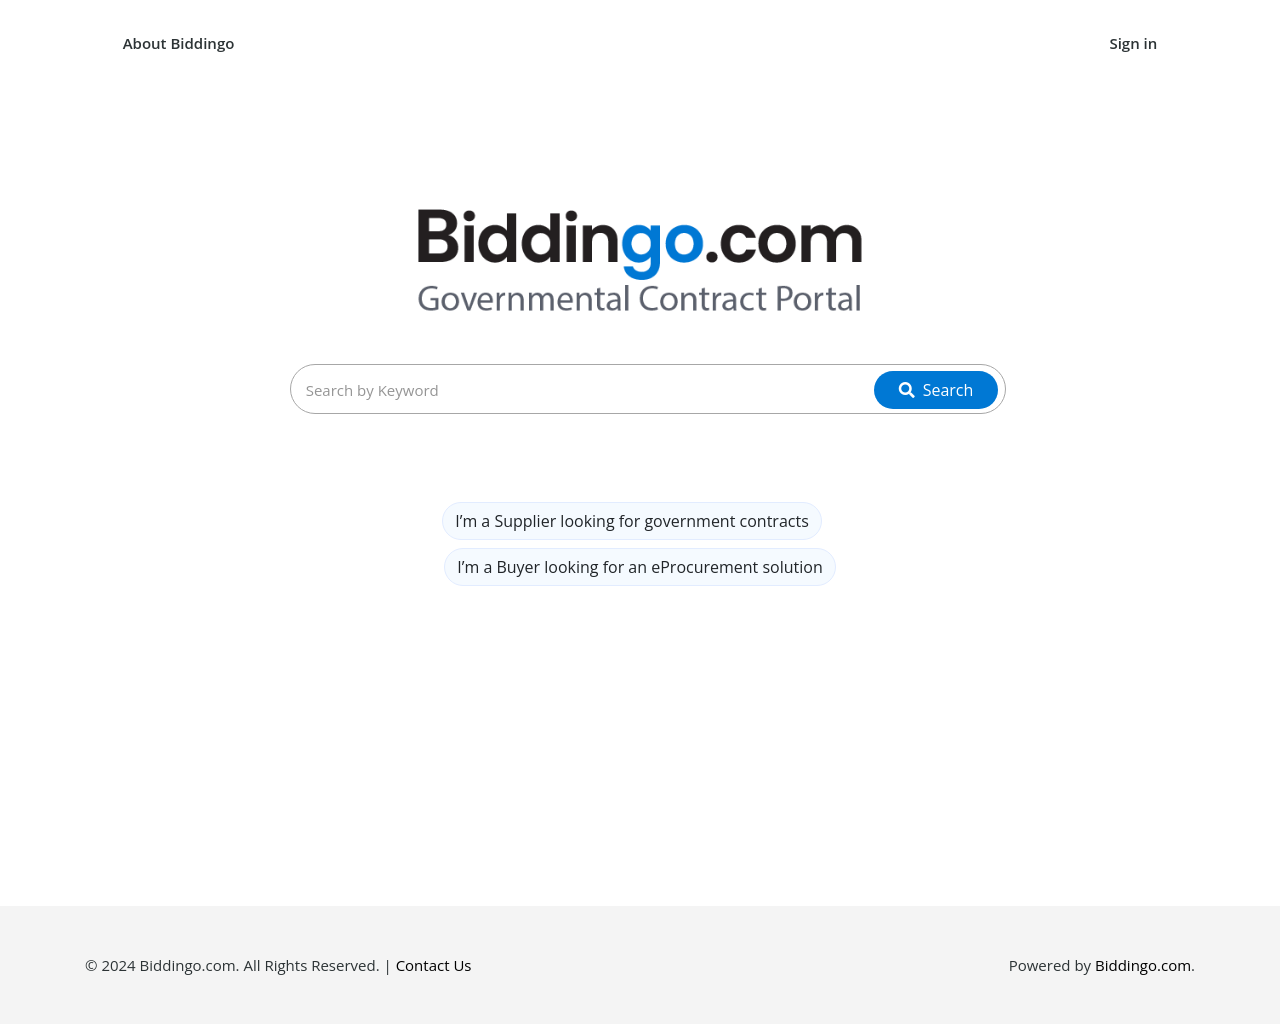 biddingo.com